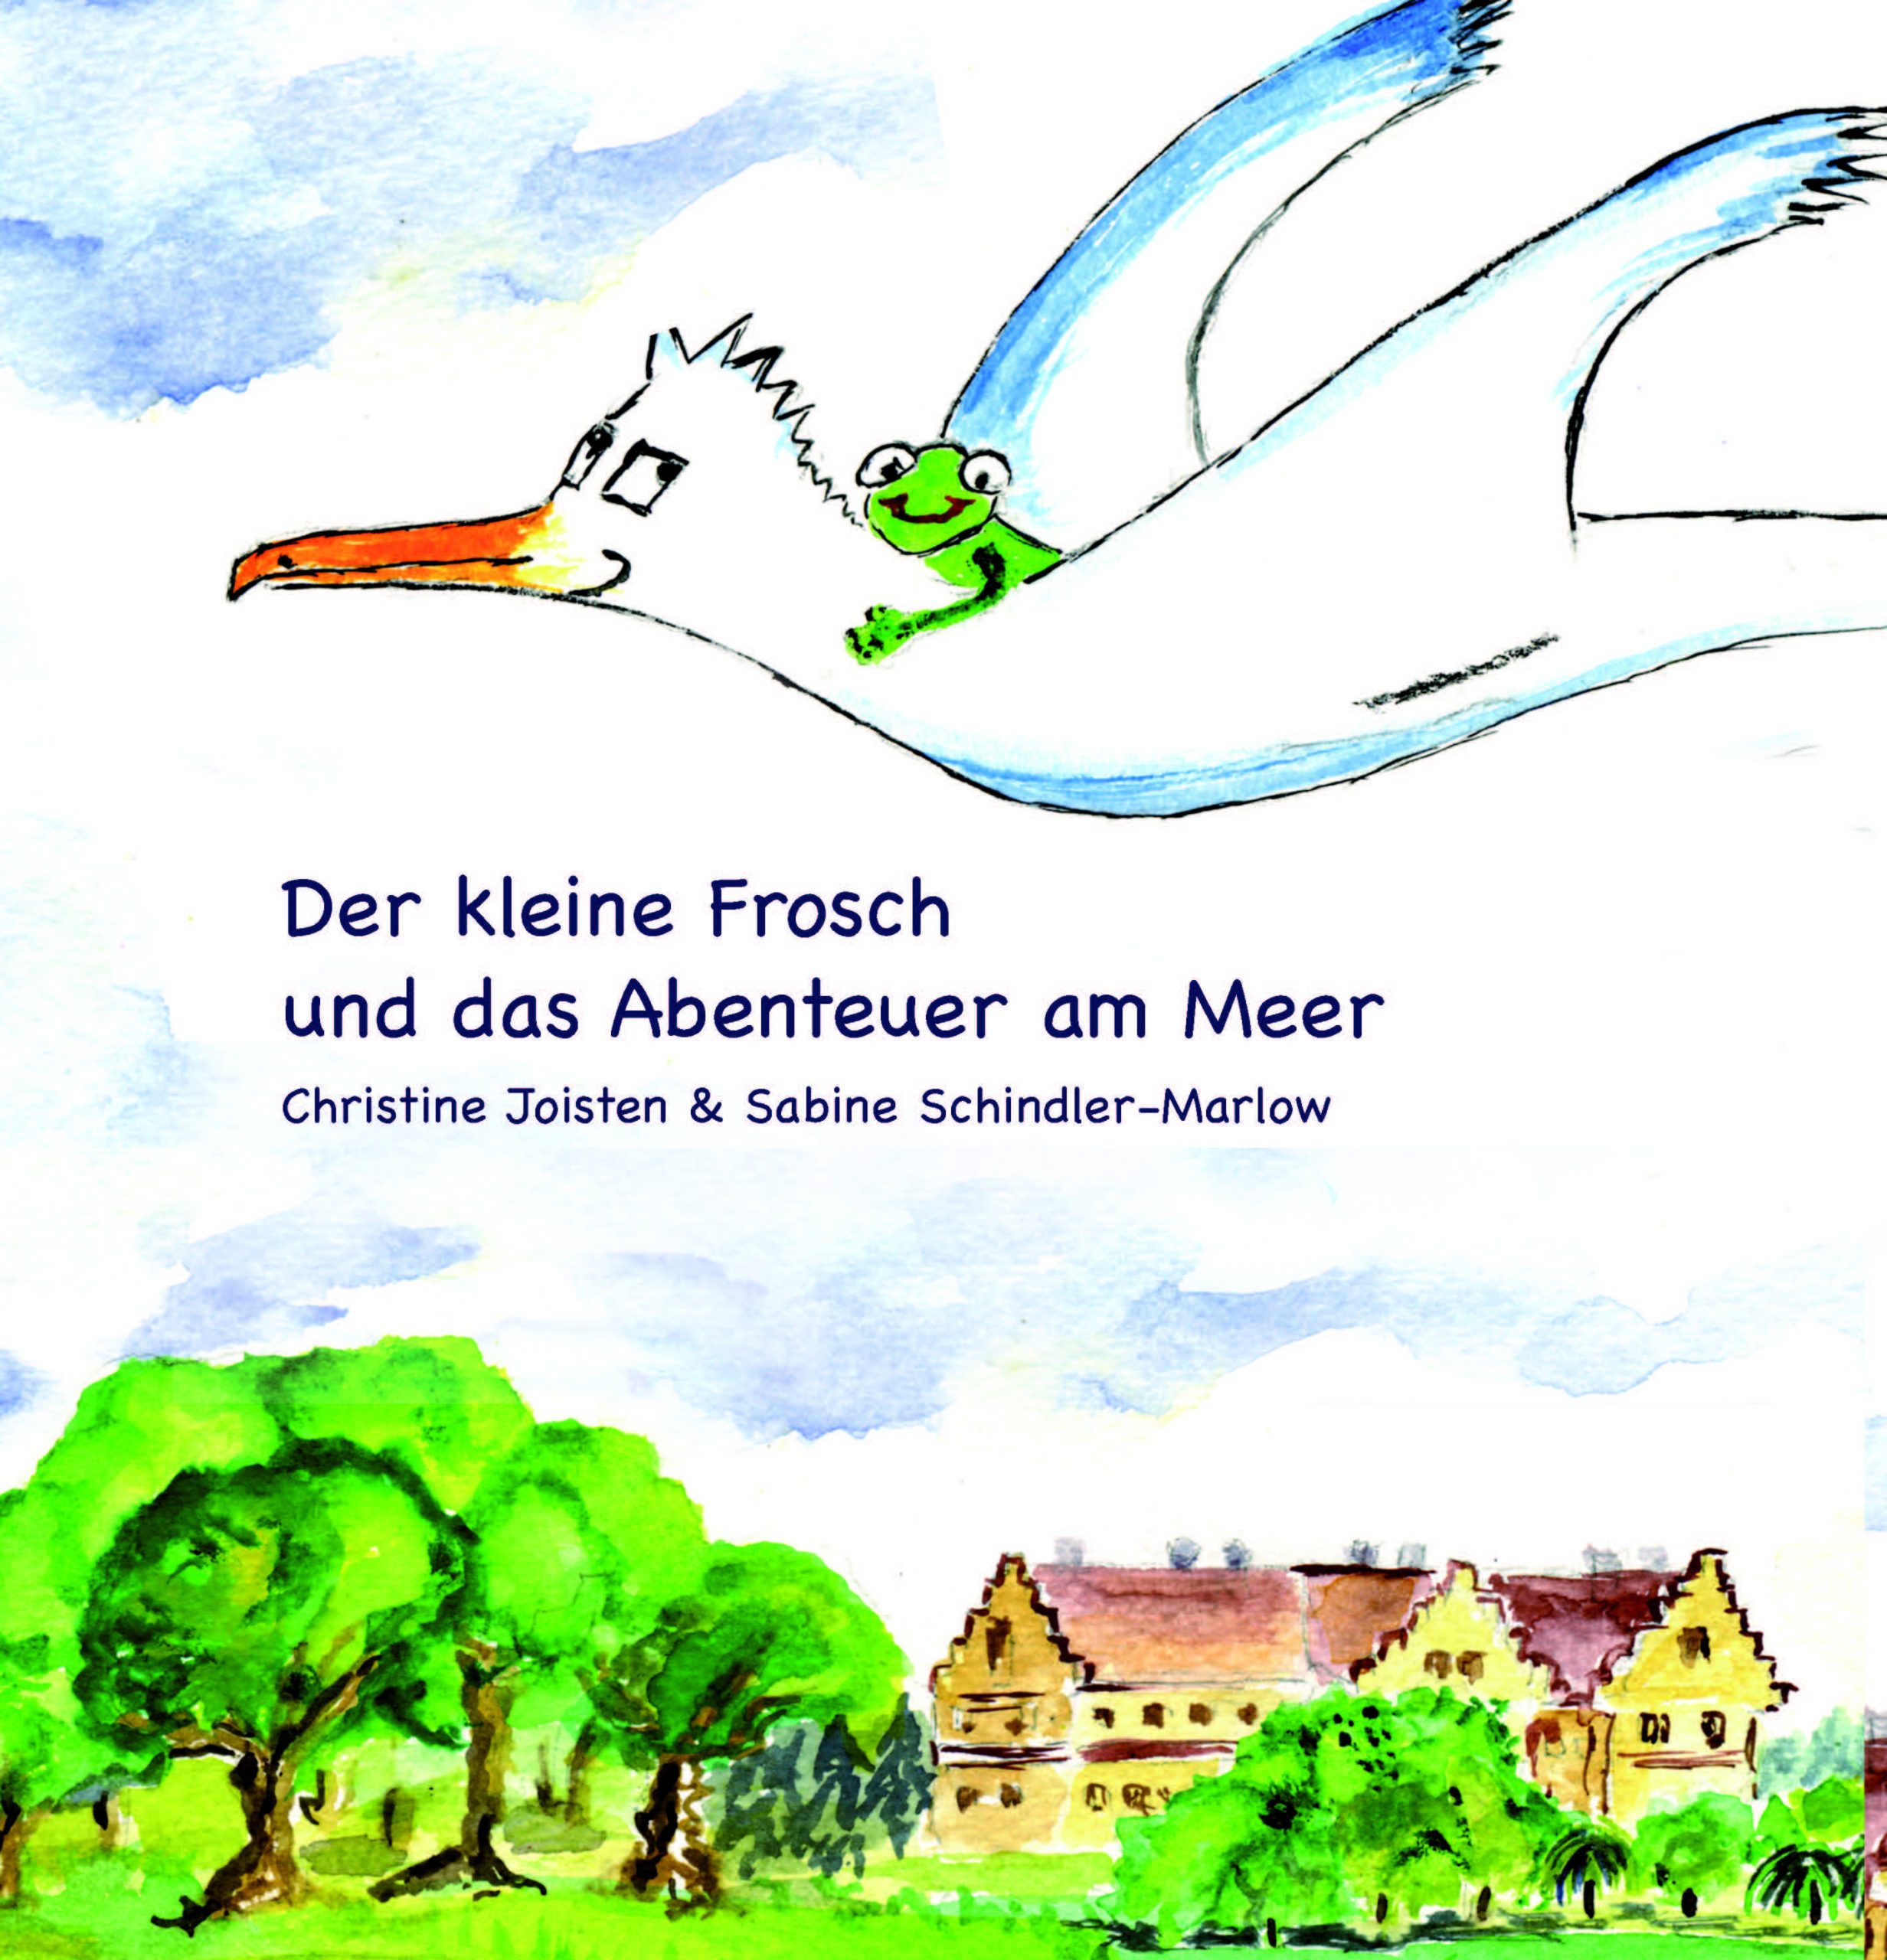 Auf dem Cover des Kinderbuchs "Der kleine Frosch und das Abenteuer am Meer" von Christine Joisten & Sabine Schindler-Marlow ist ein Frosch, der auf einem Albatross fliegt, abgebildet.